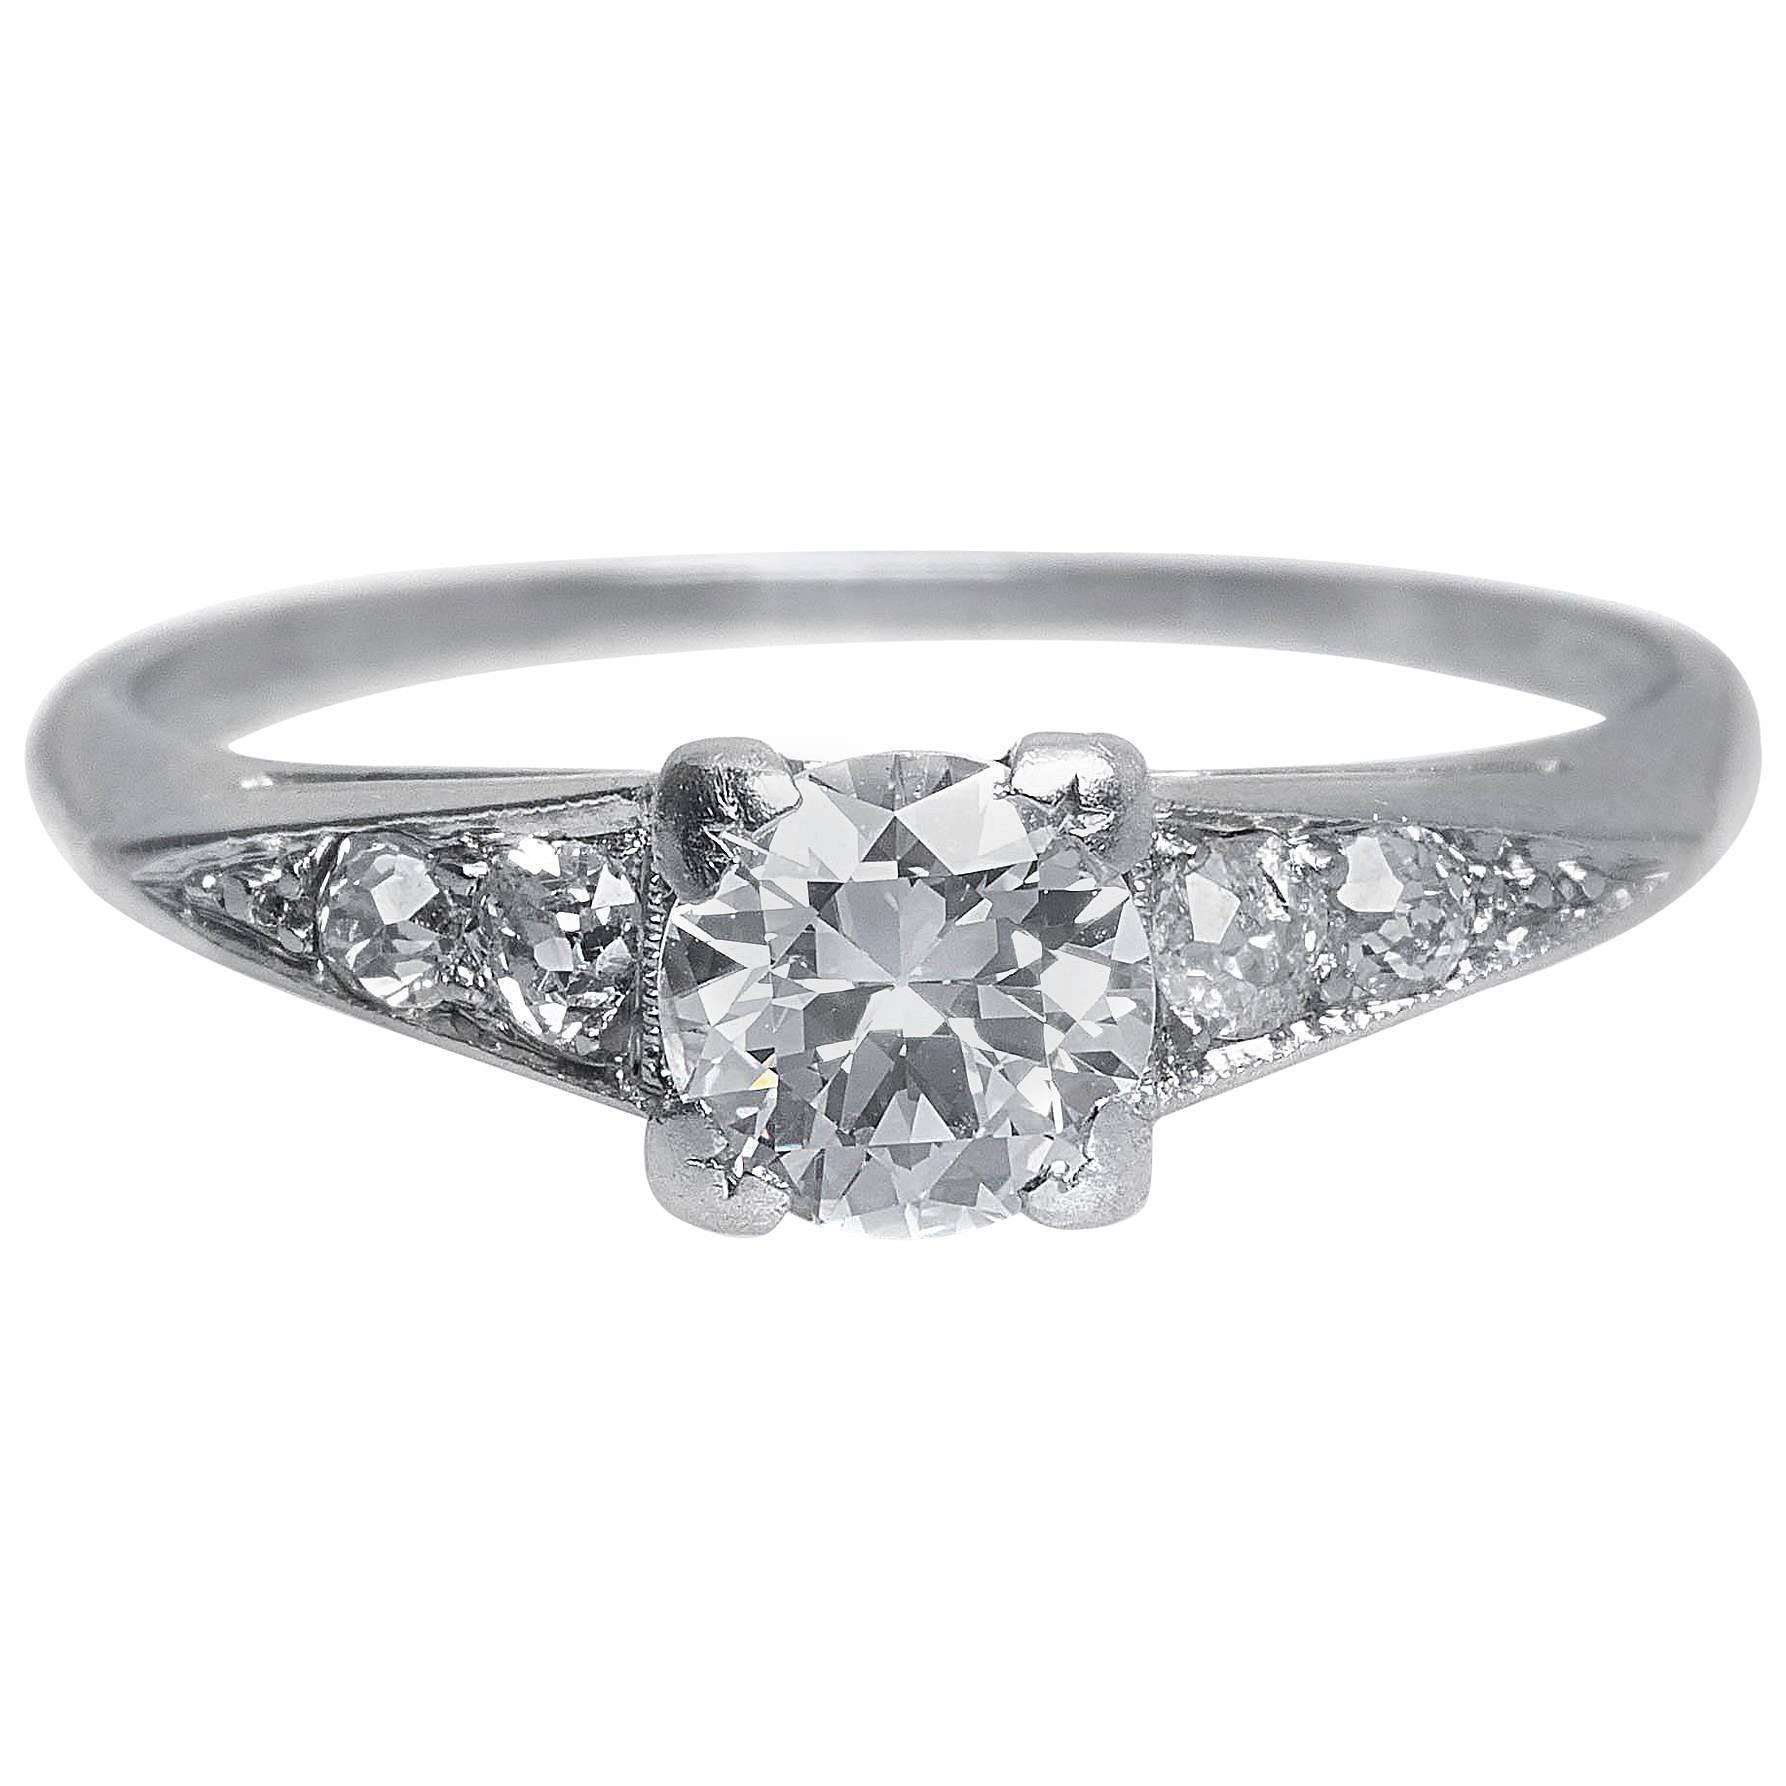 1930s Art Deco .60 Carat Old European Cut Diamond Platinum Engagement Ring